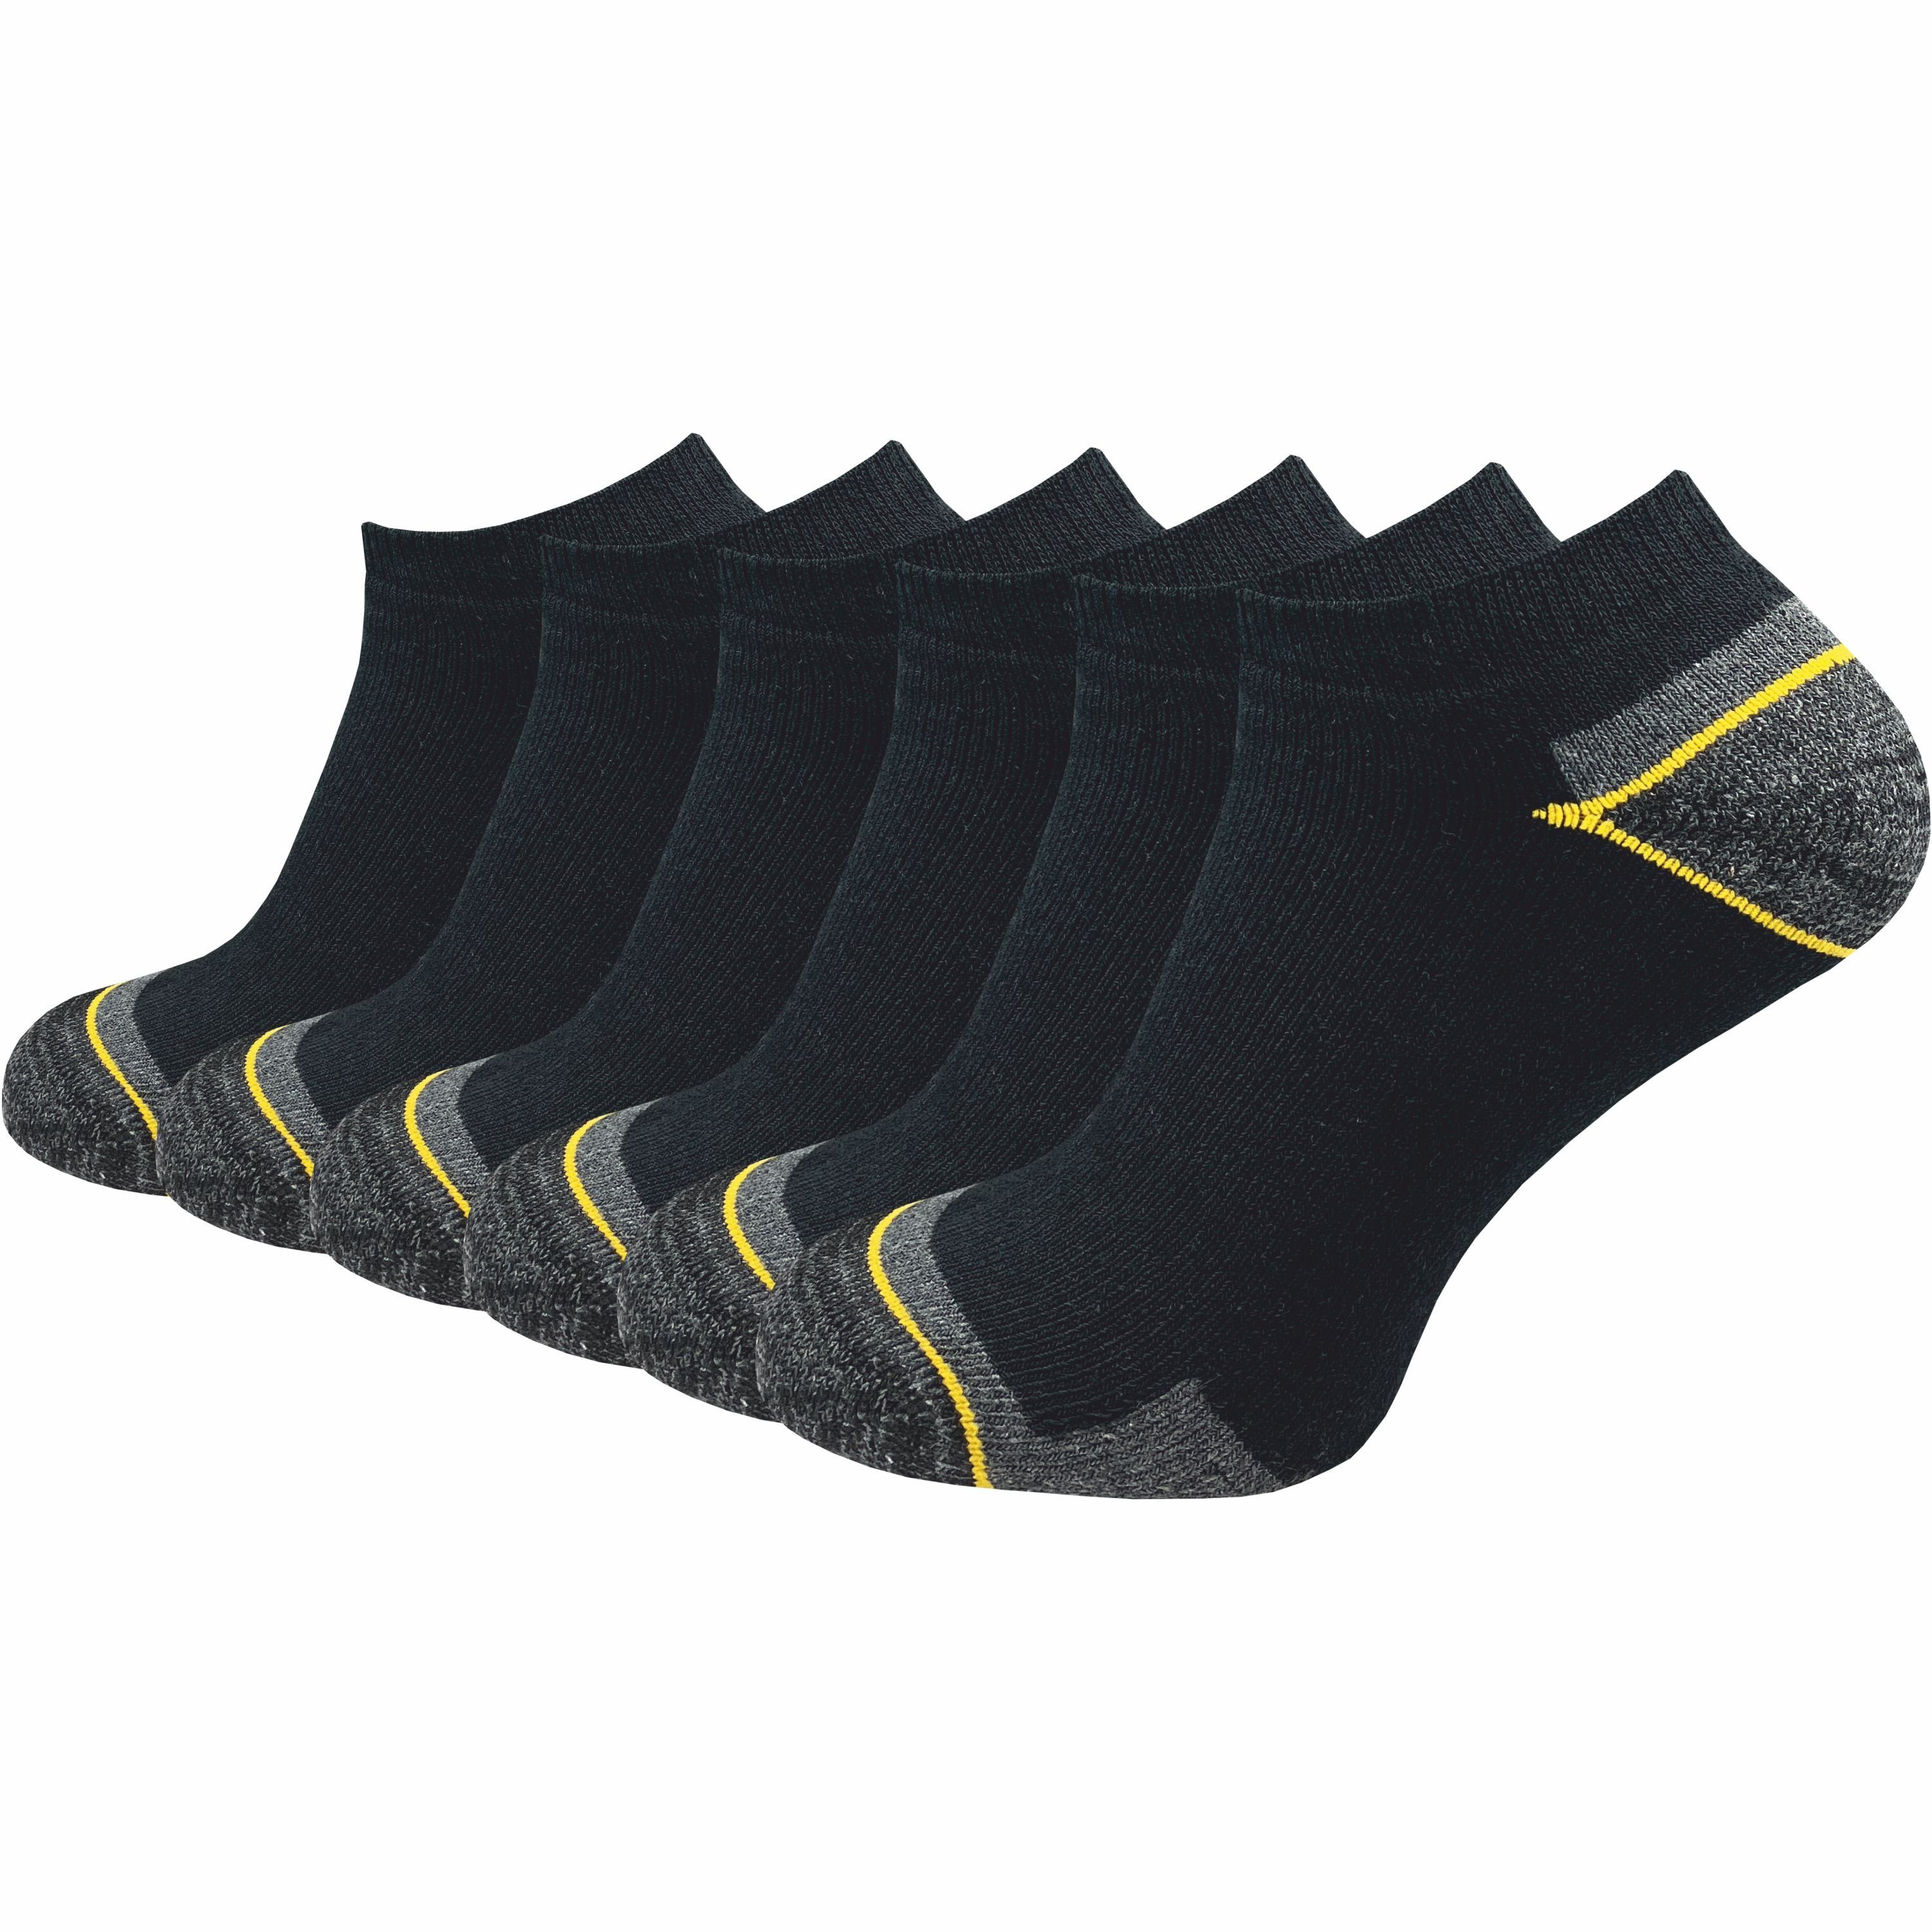 GAWILO Arbeitssocken - Sneaker - für Herren mit atmungsaktiver Baumwolle gegen Schweißfüße (6 Paar) Ideal für Sicherheitsschuhe oder Arbeitsschuhe - Arbeits Sneaker Schwarz